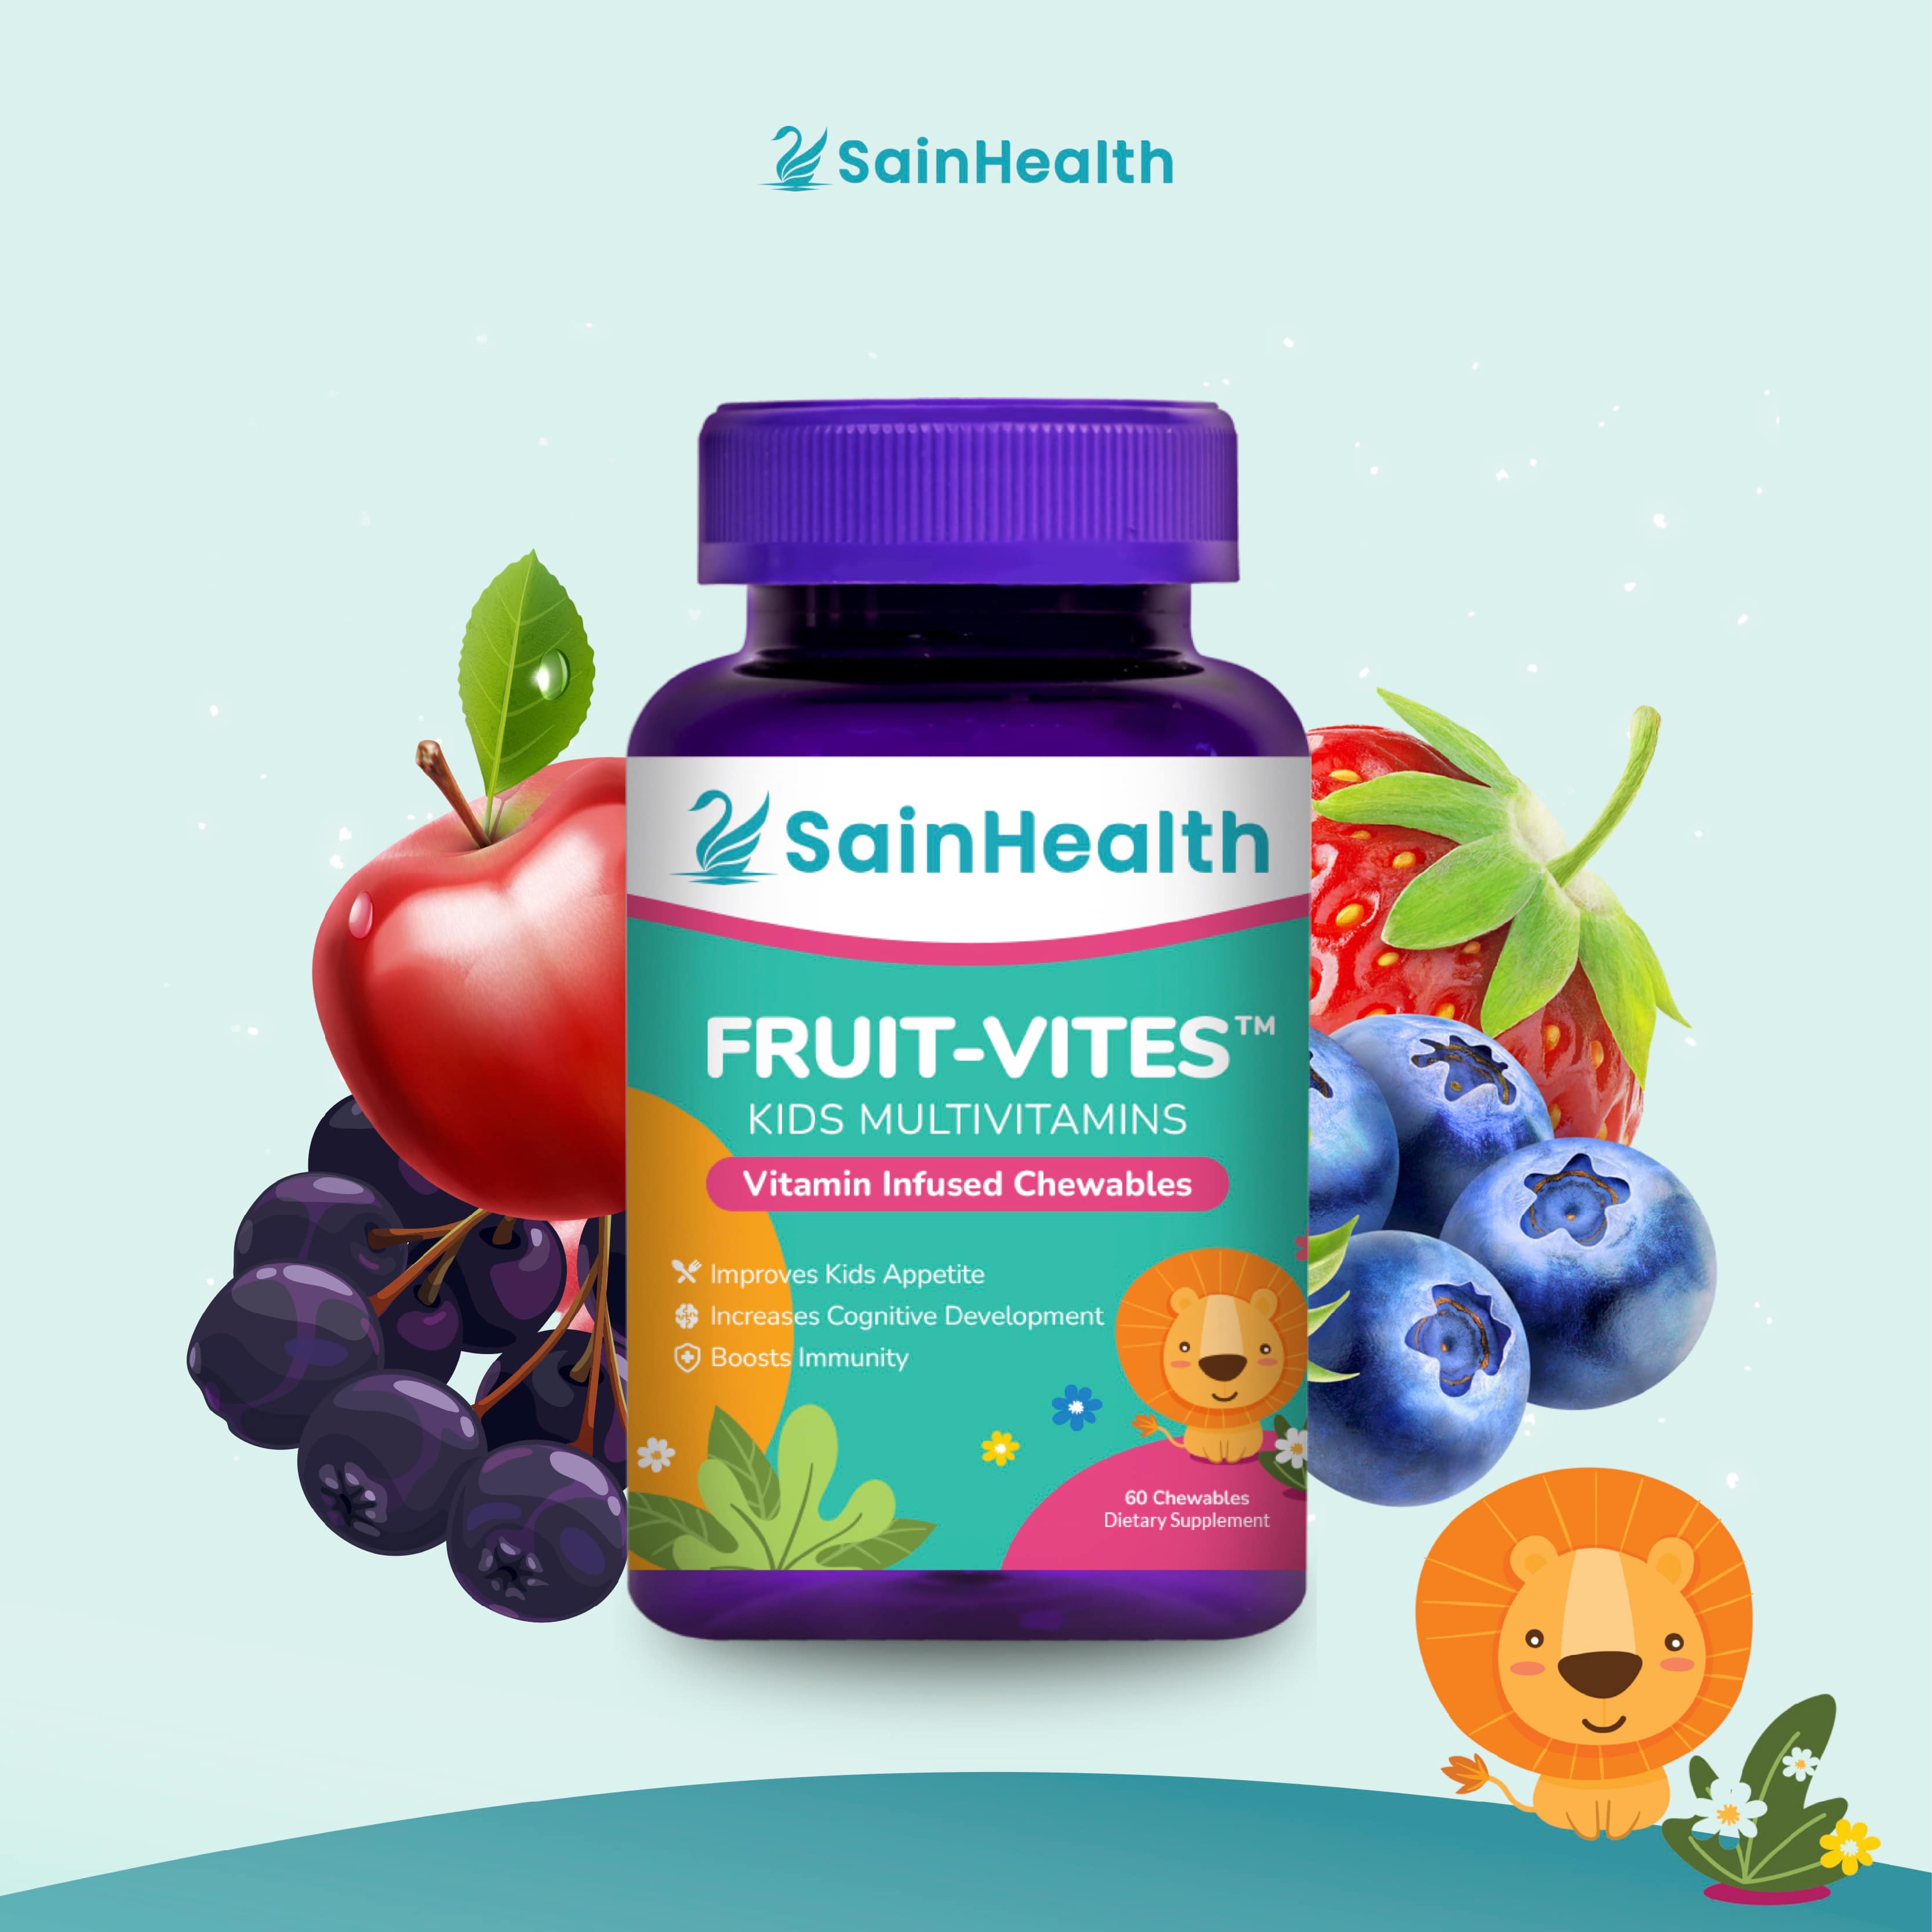 Sain Health Fruit-Vites™ Kids Multivitamins Vitamin Infused Chewables